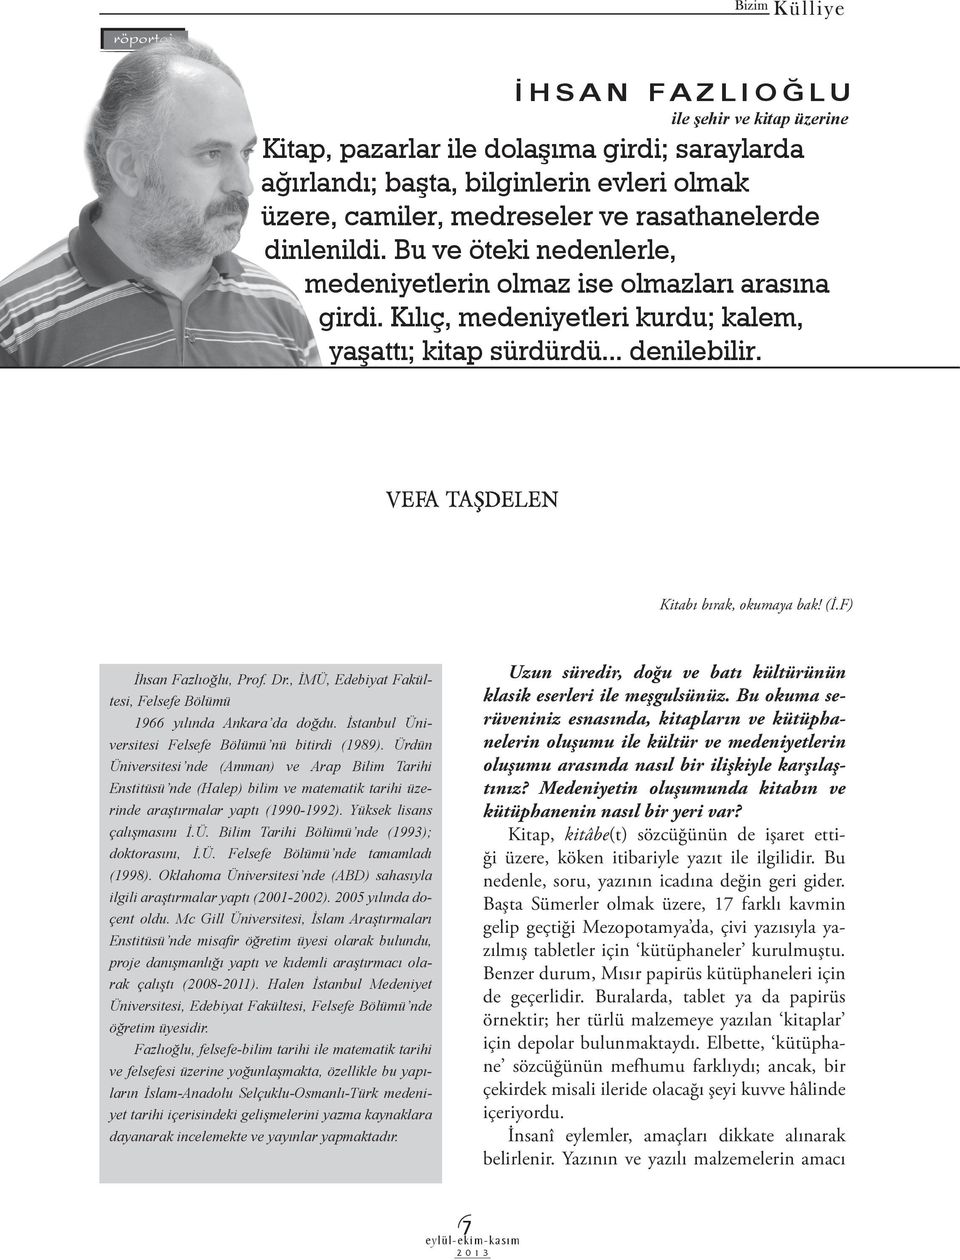 F) İhsan Fazlıoğlu, Prof. Dr., İMÜ, Edebiyat Fakültesi, Felsefe Bölümü 1966 yılında Ankara da doğdu. İstanbul Üniversitesi Felsefe Bölümü nü bitirdi (1989).